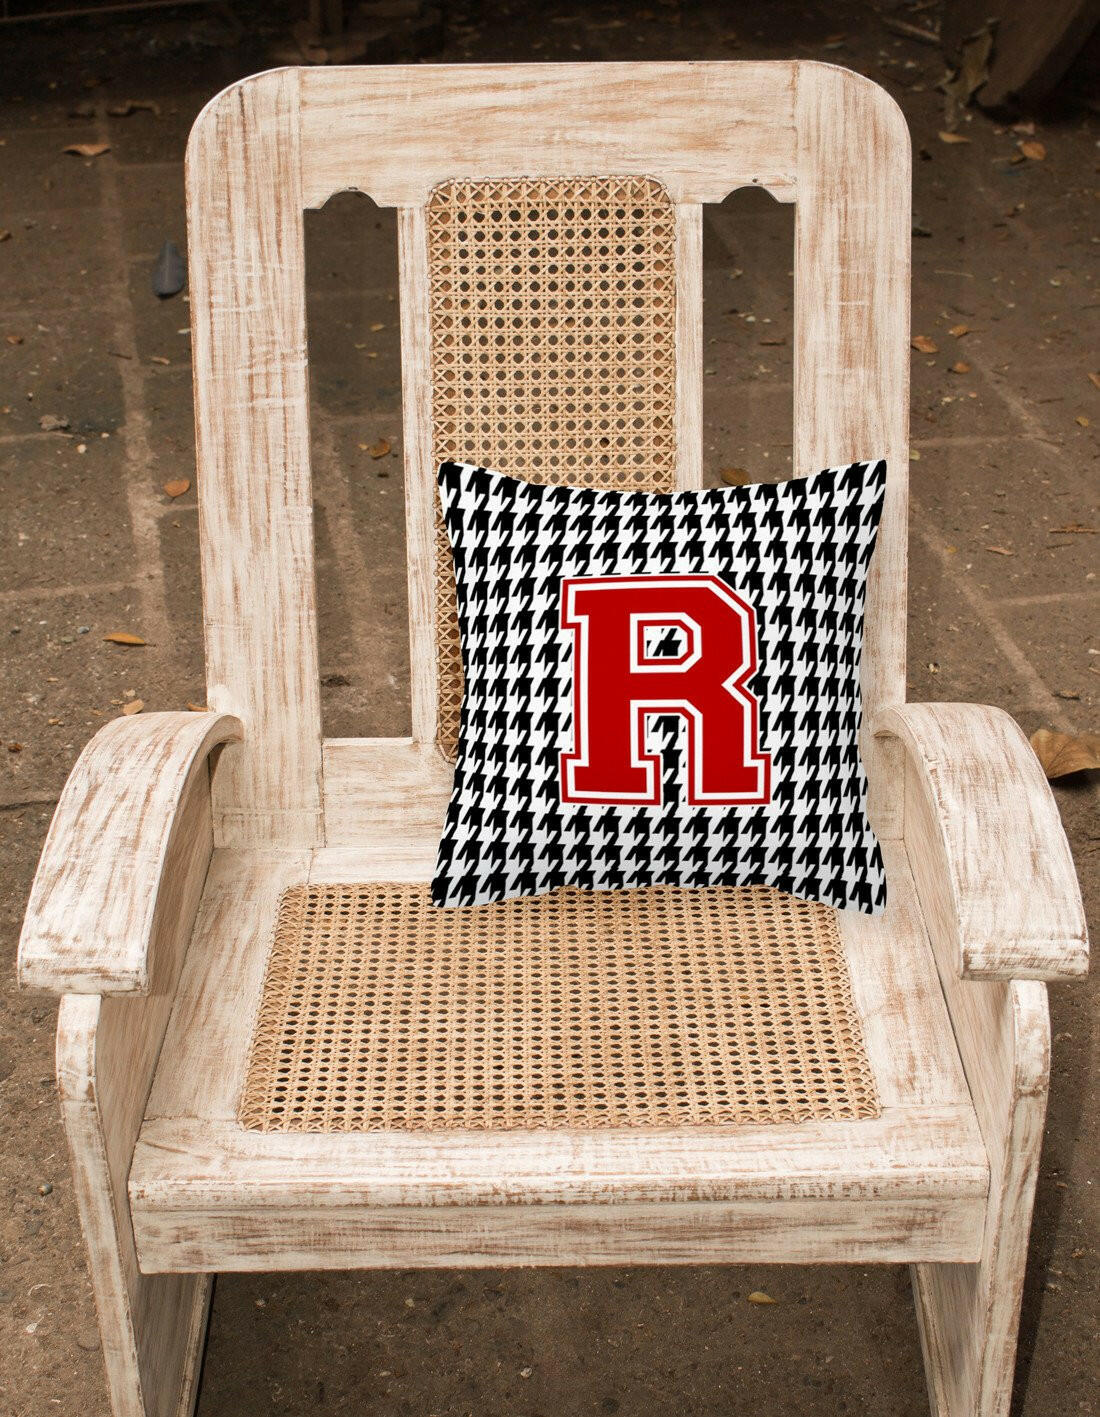 Monogram - Initial R Houndstooth Decorative   Canvas Fabric Pillow CJ1021 - the-store.com